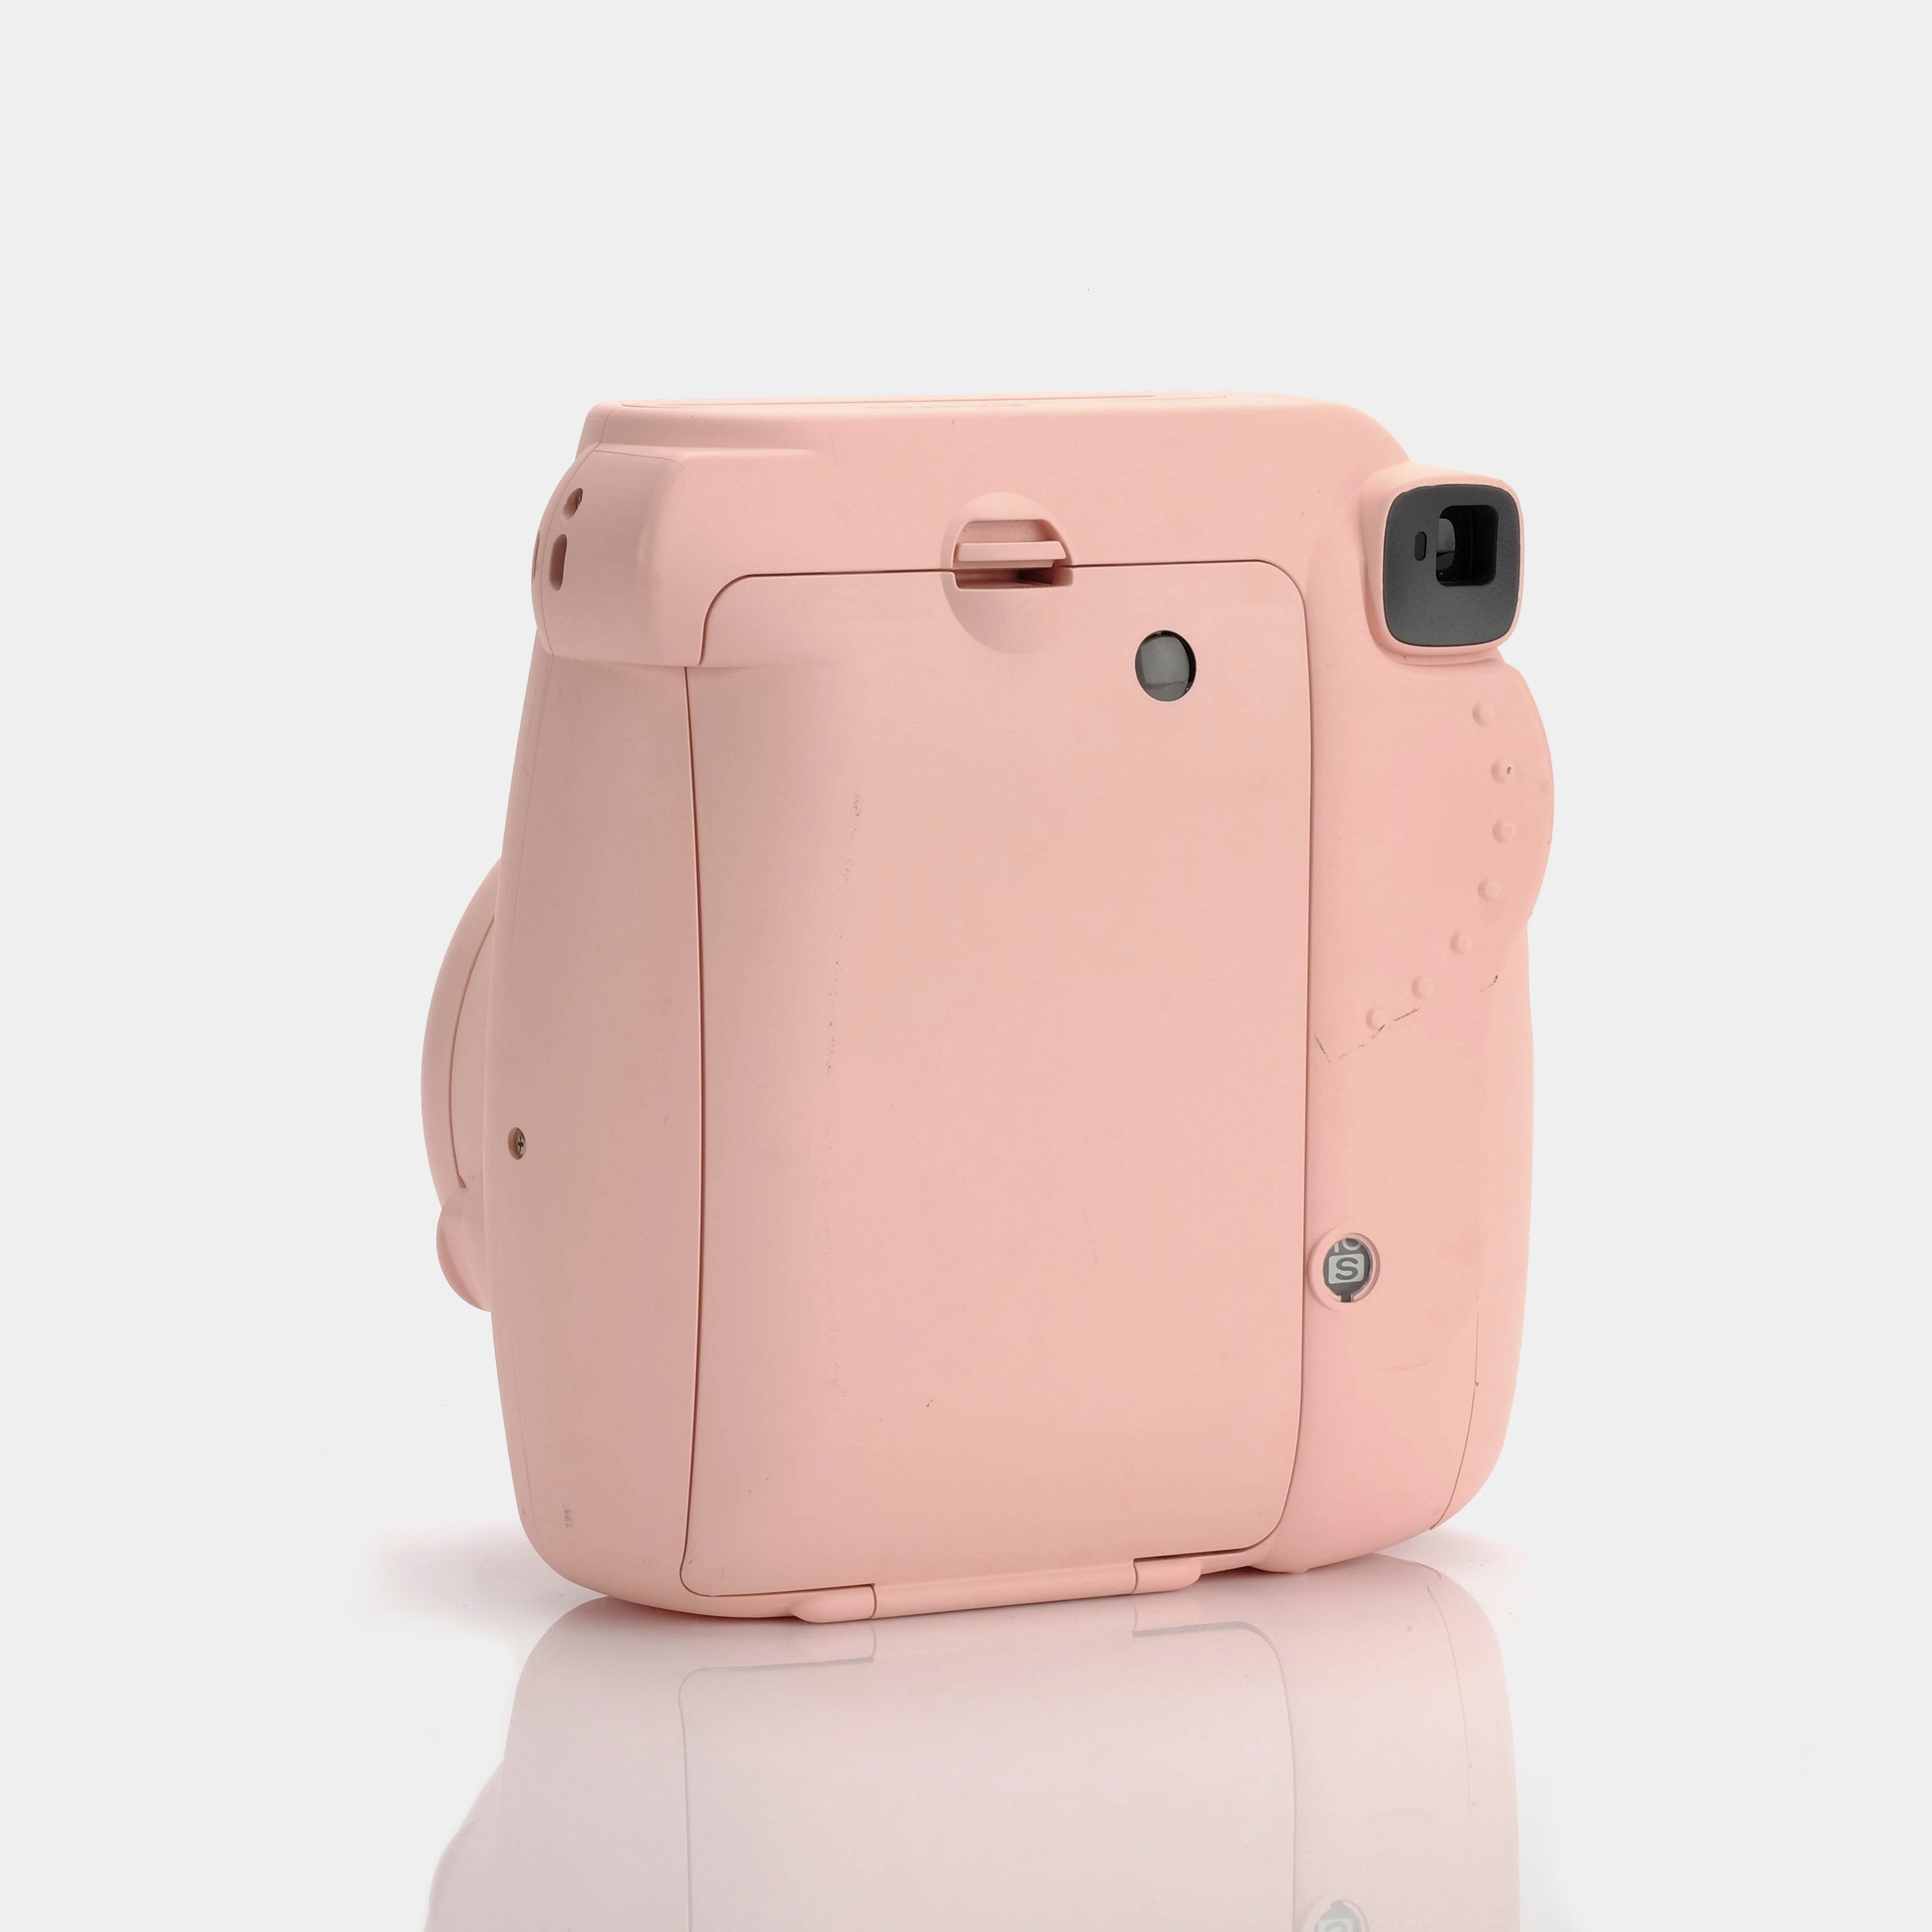 Fujifilm Instax Mini 8 Pink Instant Film Camera - Refurbished